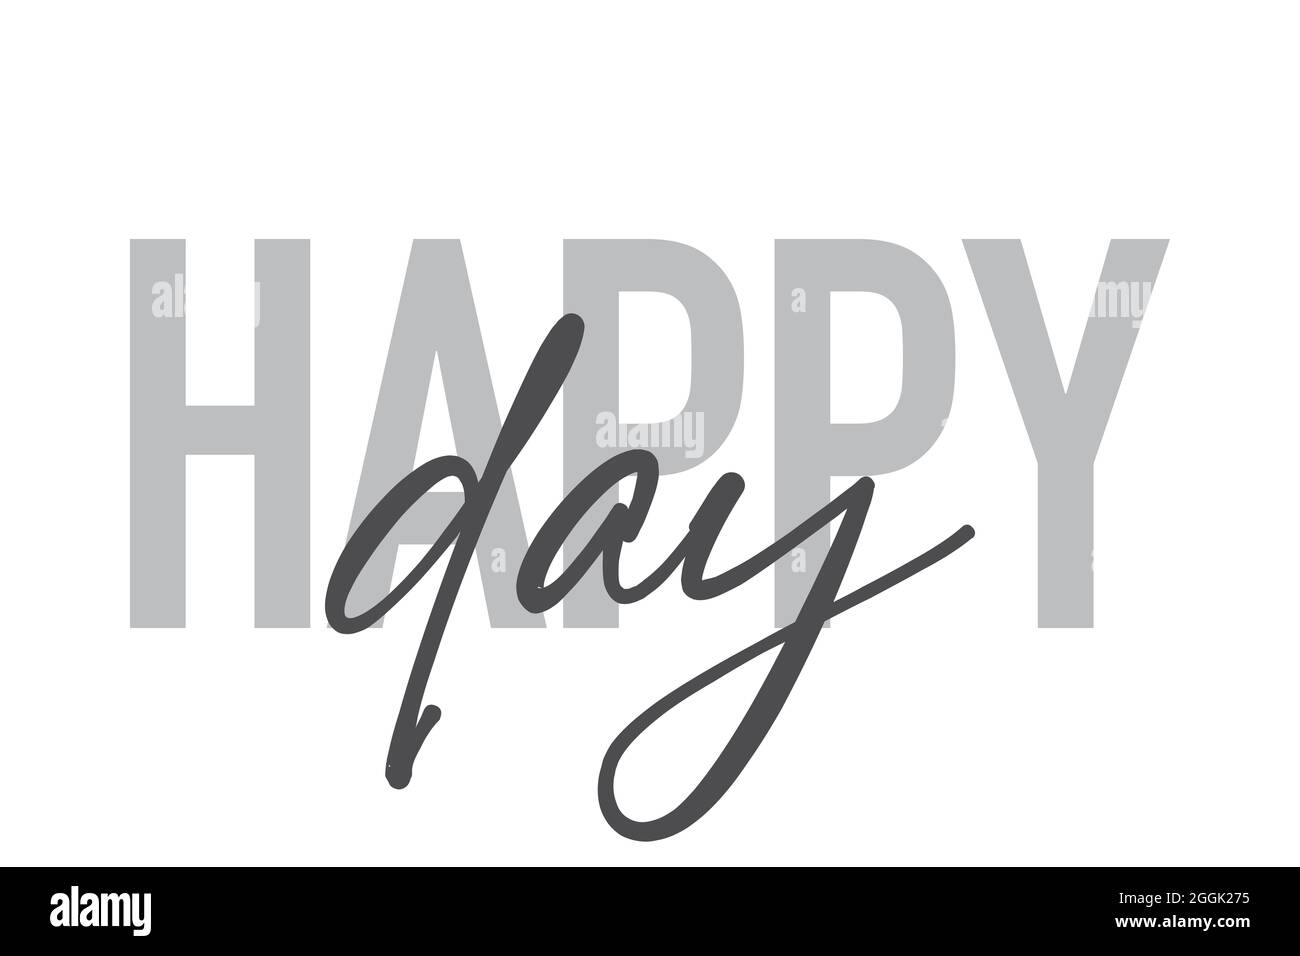 Modernes, schlichtes, minimalistisches typografisches Design eines Sprichwort „Happy Day“ in Grautönen. Coole, urbane, trendige und verspielte Grafik-Vektorgrafik mit han Stockfoto